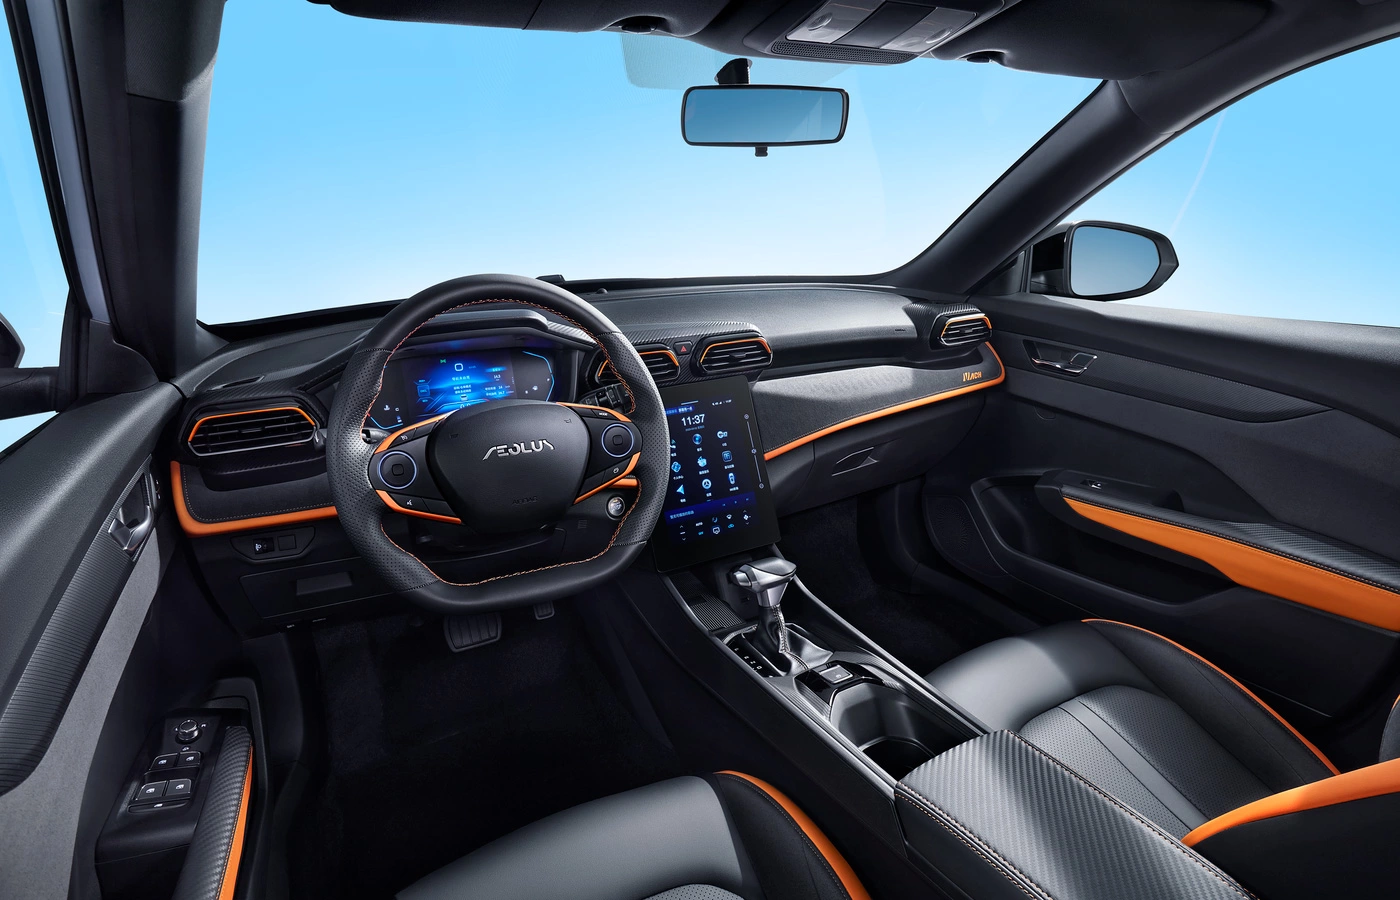 в автомобиле помимо климат-контроля предусмотрена система автоматической очистки воздуха, крыша с большим панорамным люком,13-дюймовый ultraHD мультимедийный дисплей, аудиосистема High Quality Surround с объемным звучанием – даже в базовой версии Shine GS предусмотрено 53 опции